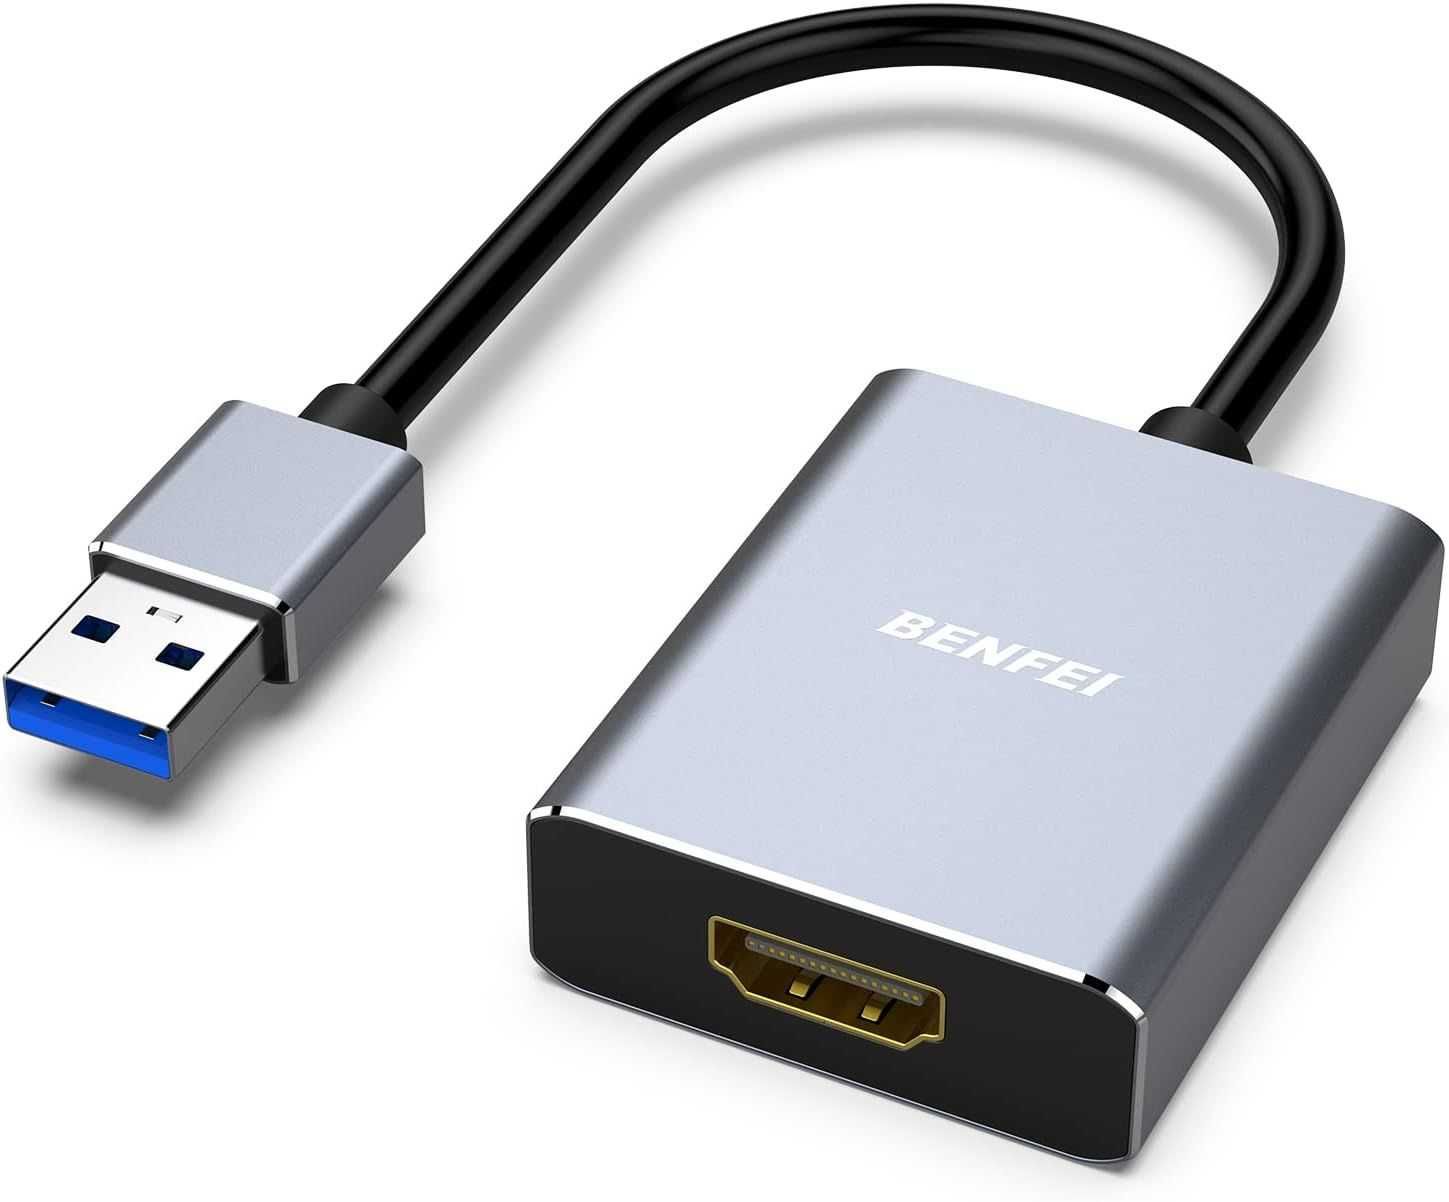 Адаптер BENFEI USB 3.0 – HDMI